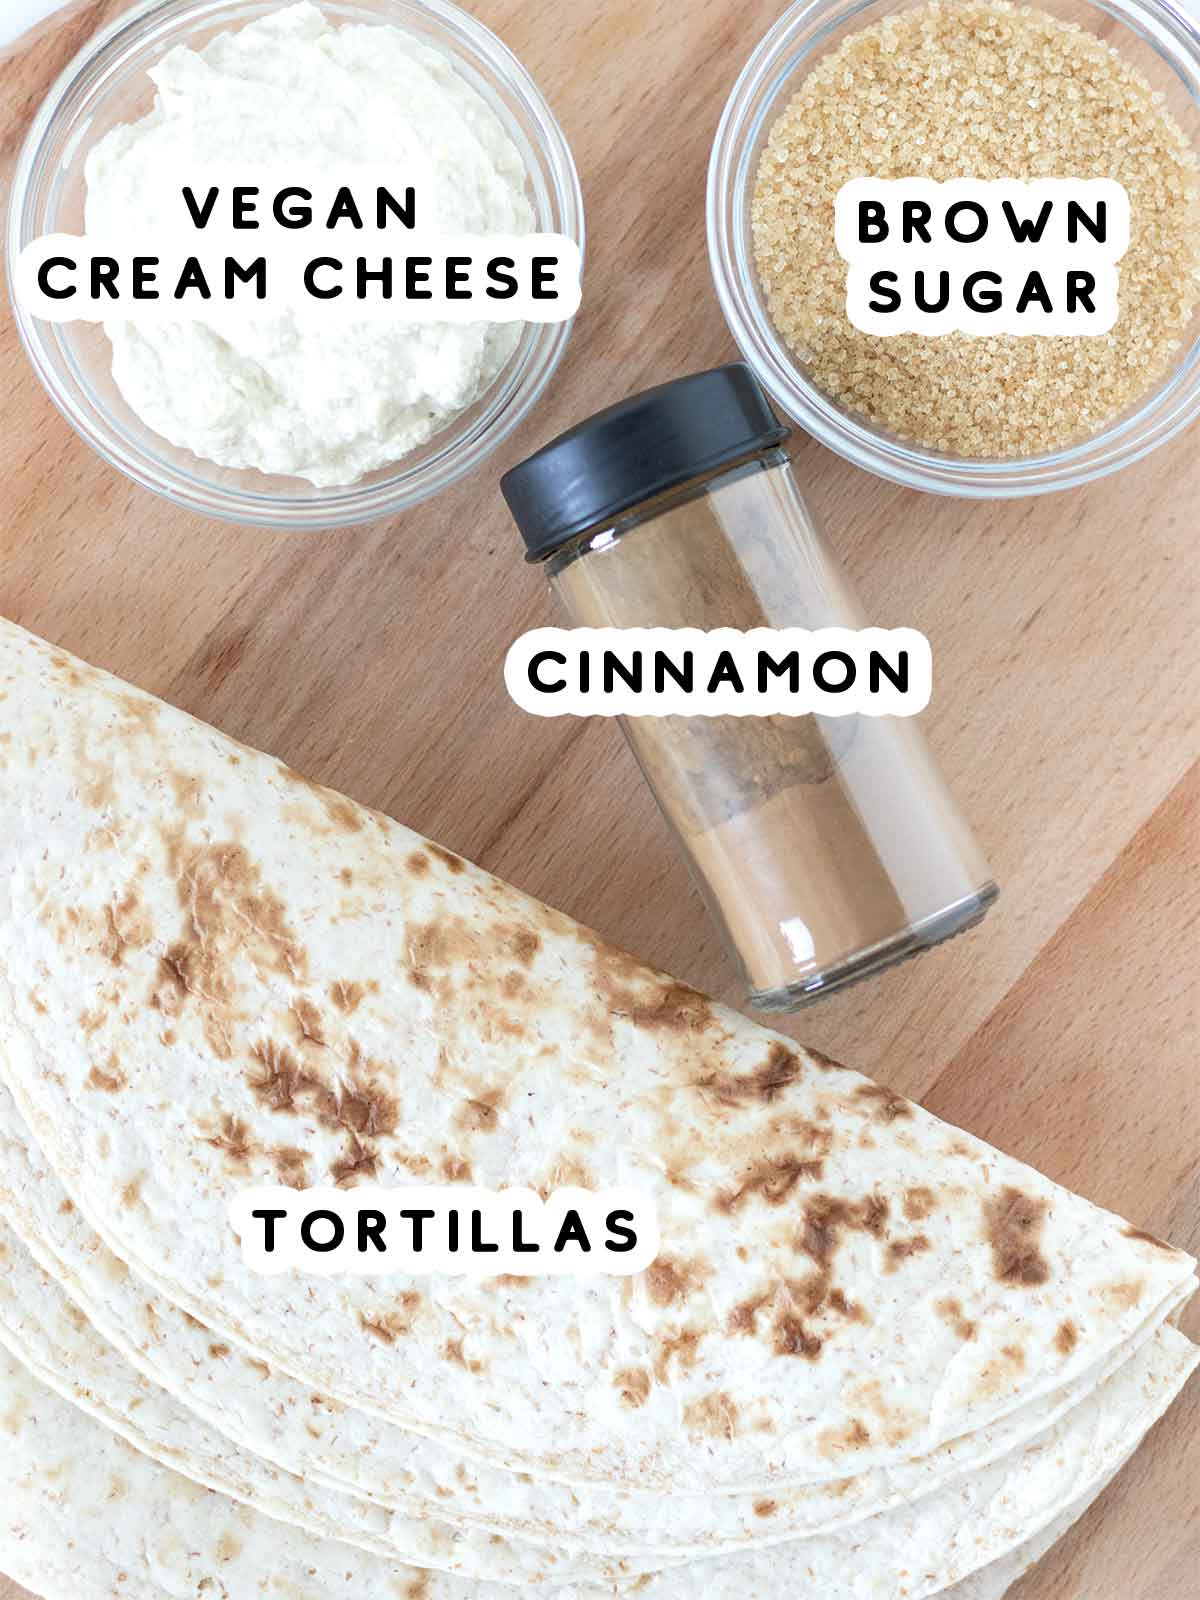 Whole wheat flour tortillas, ground cinnamon, vegan cream cheese, and brown sugar.